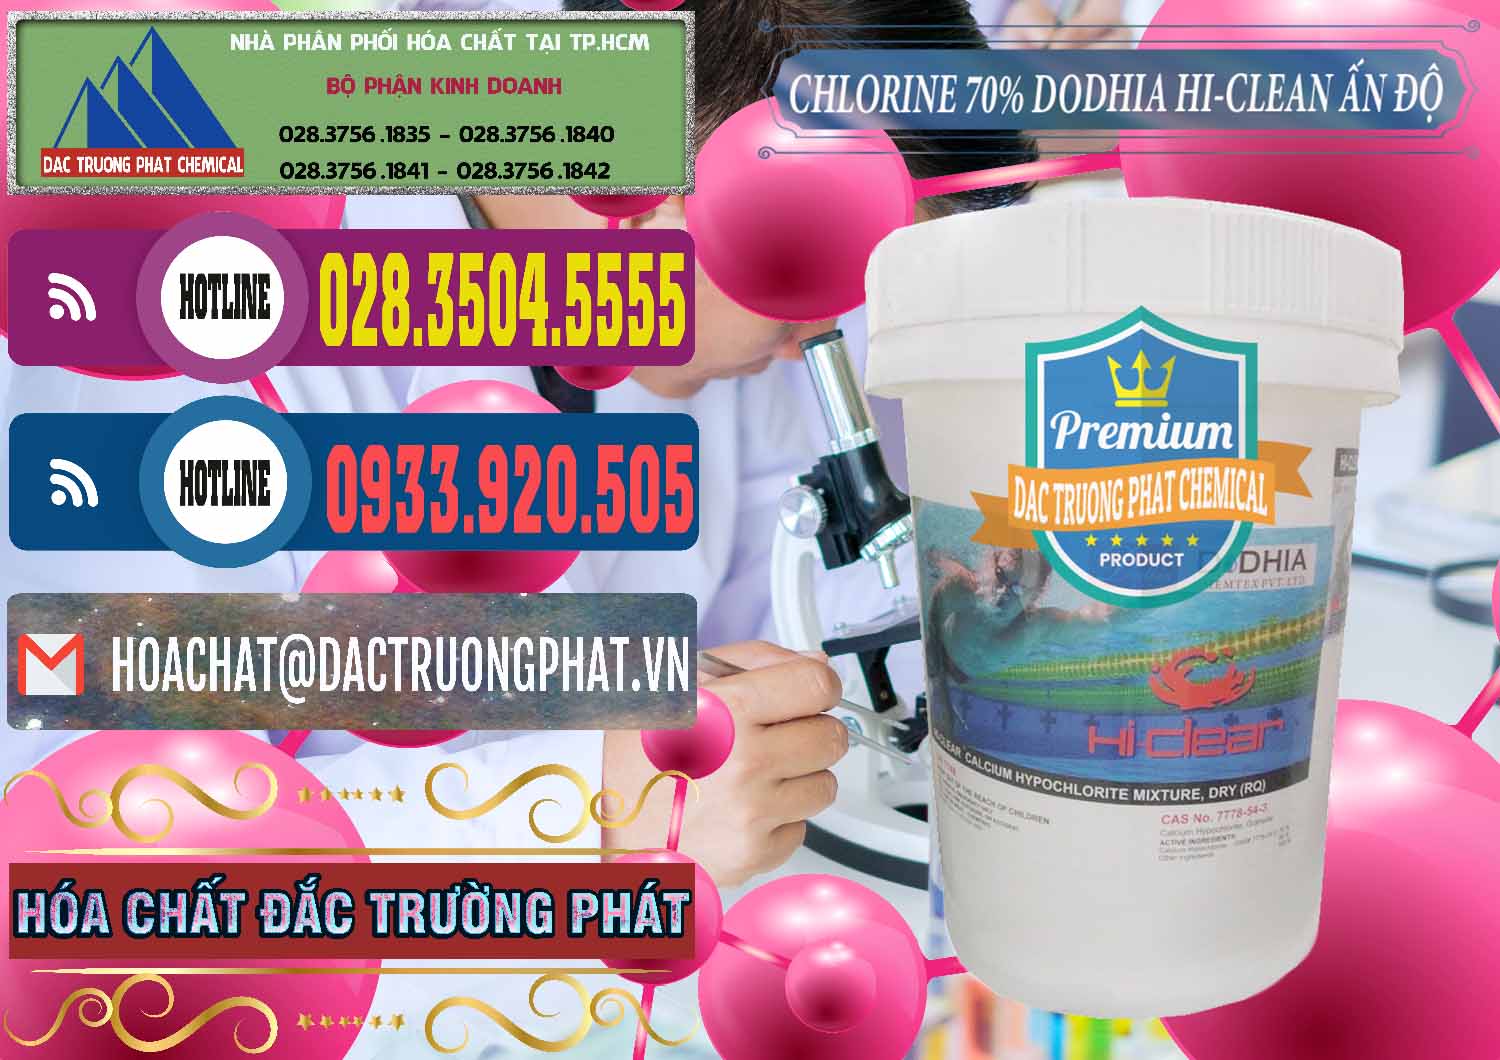 Đơn vị bán - cung cấp Chlorine – Clorin 70% Dodhia Hi-Clean Ấn Độ India - 0214 - Bán & phân phối hóa chất tại TP.HCM - muabanhoachat.com.vn